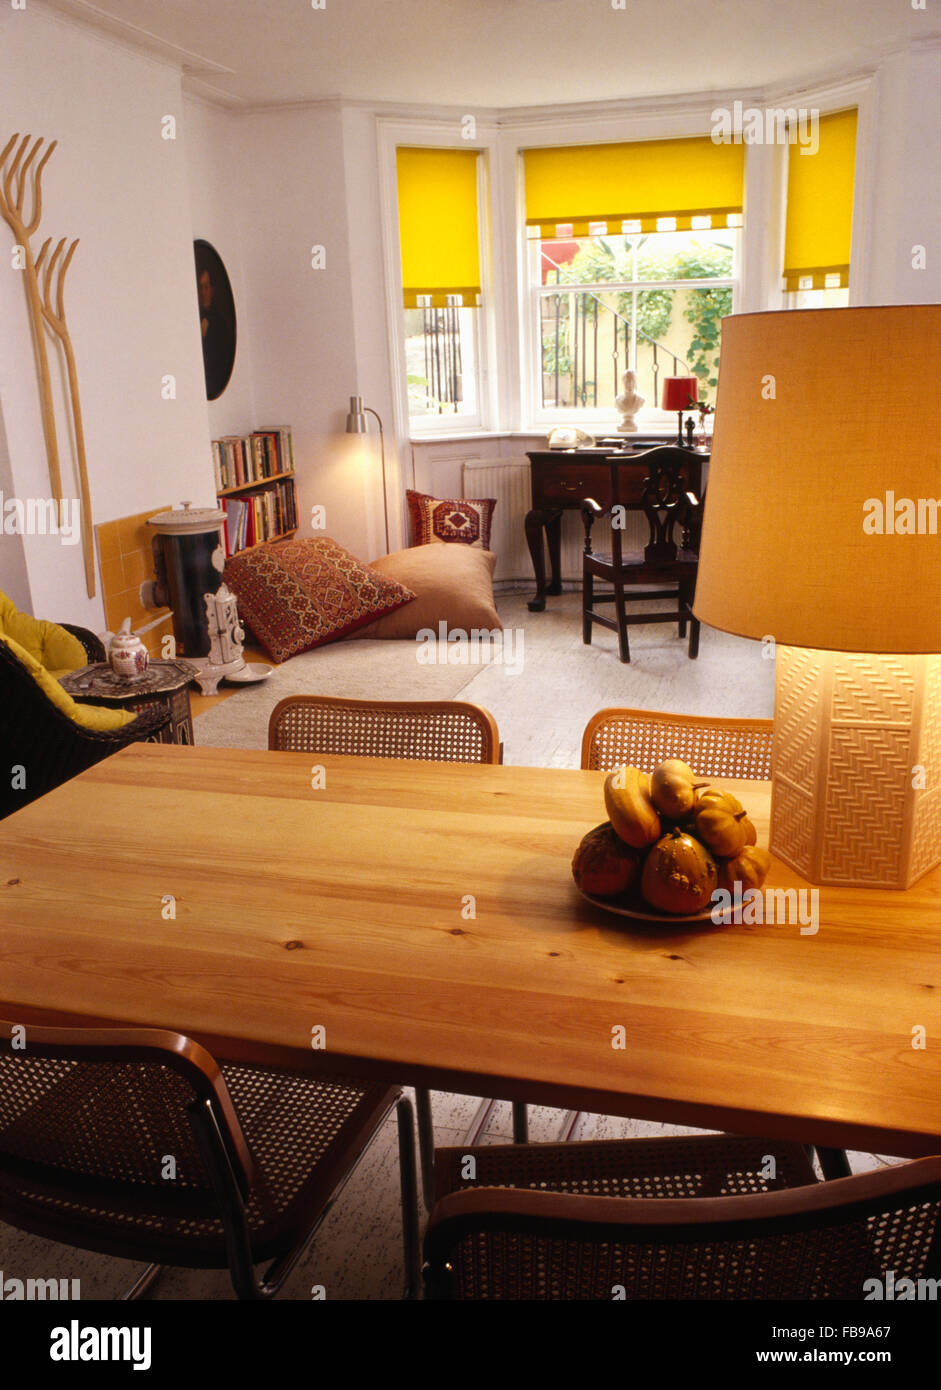 Lampe auf Kiefer Tisch im Essbereich der sechziger Jahre Wohnzimmer mit gelben Vorhänge am Fenster Stockfoto